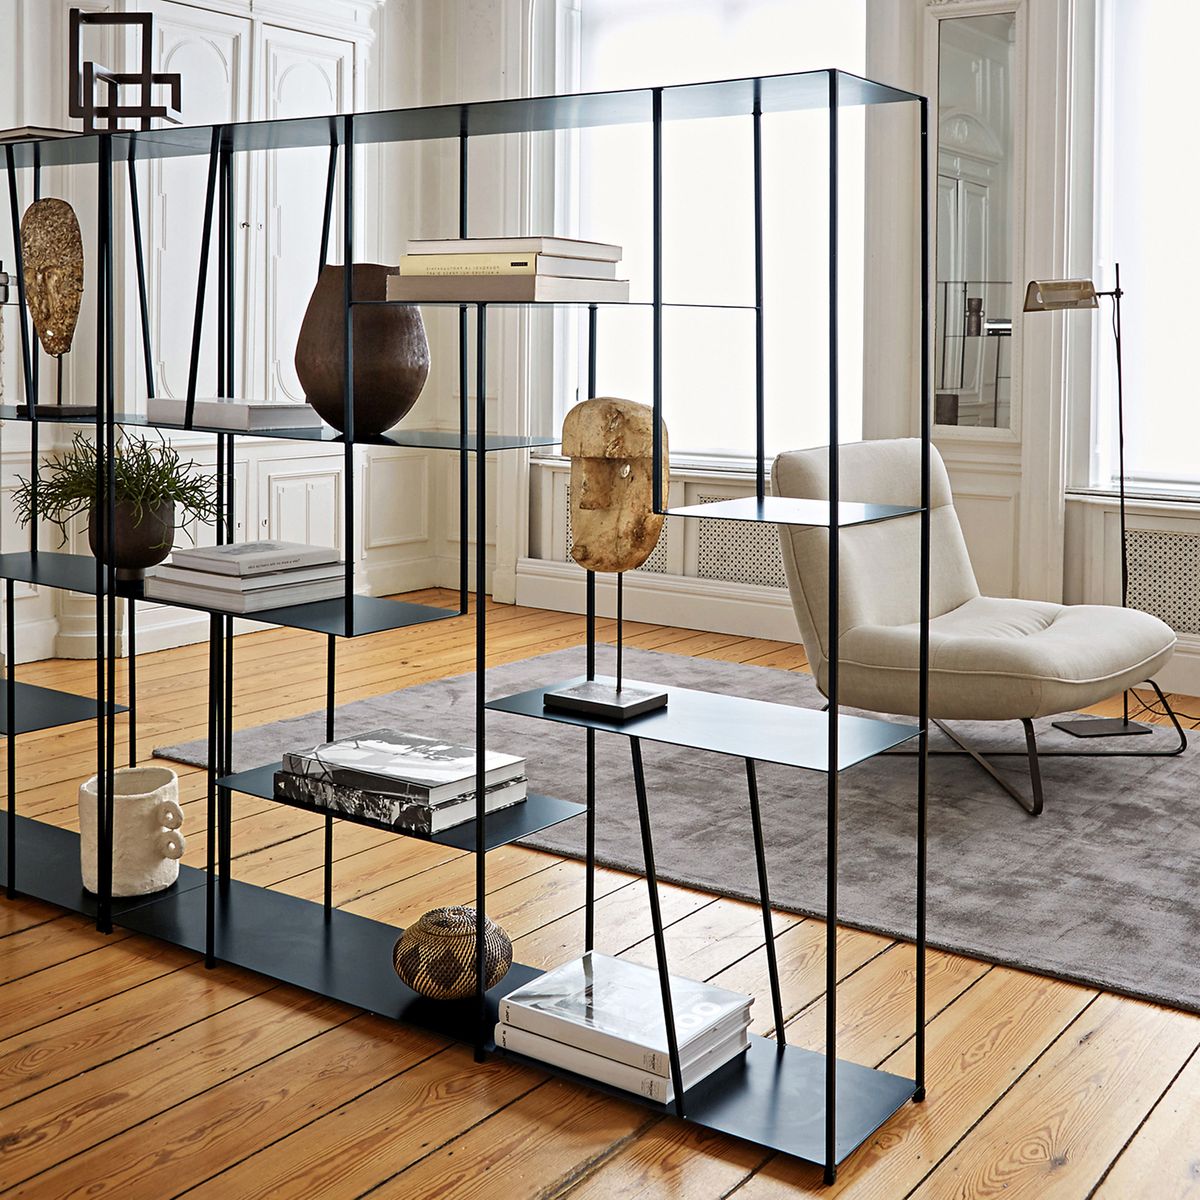 étagère métallique noire minimaliste sobre salon élégant parquet en bois style haussmannien